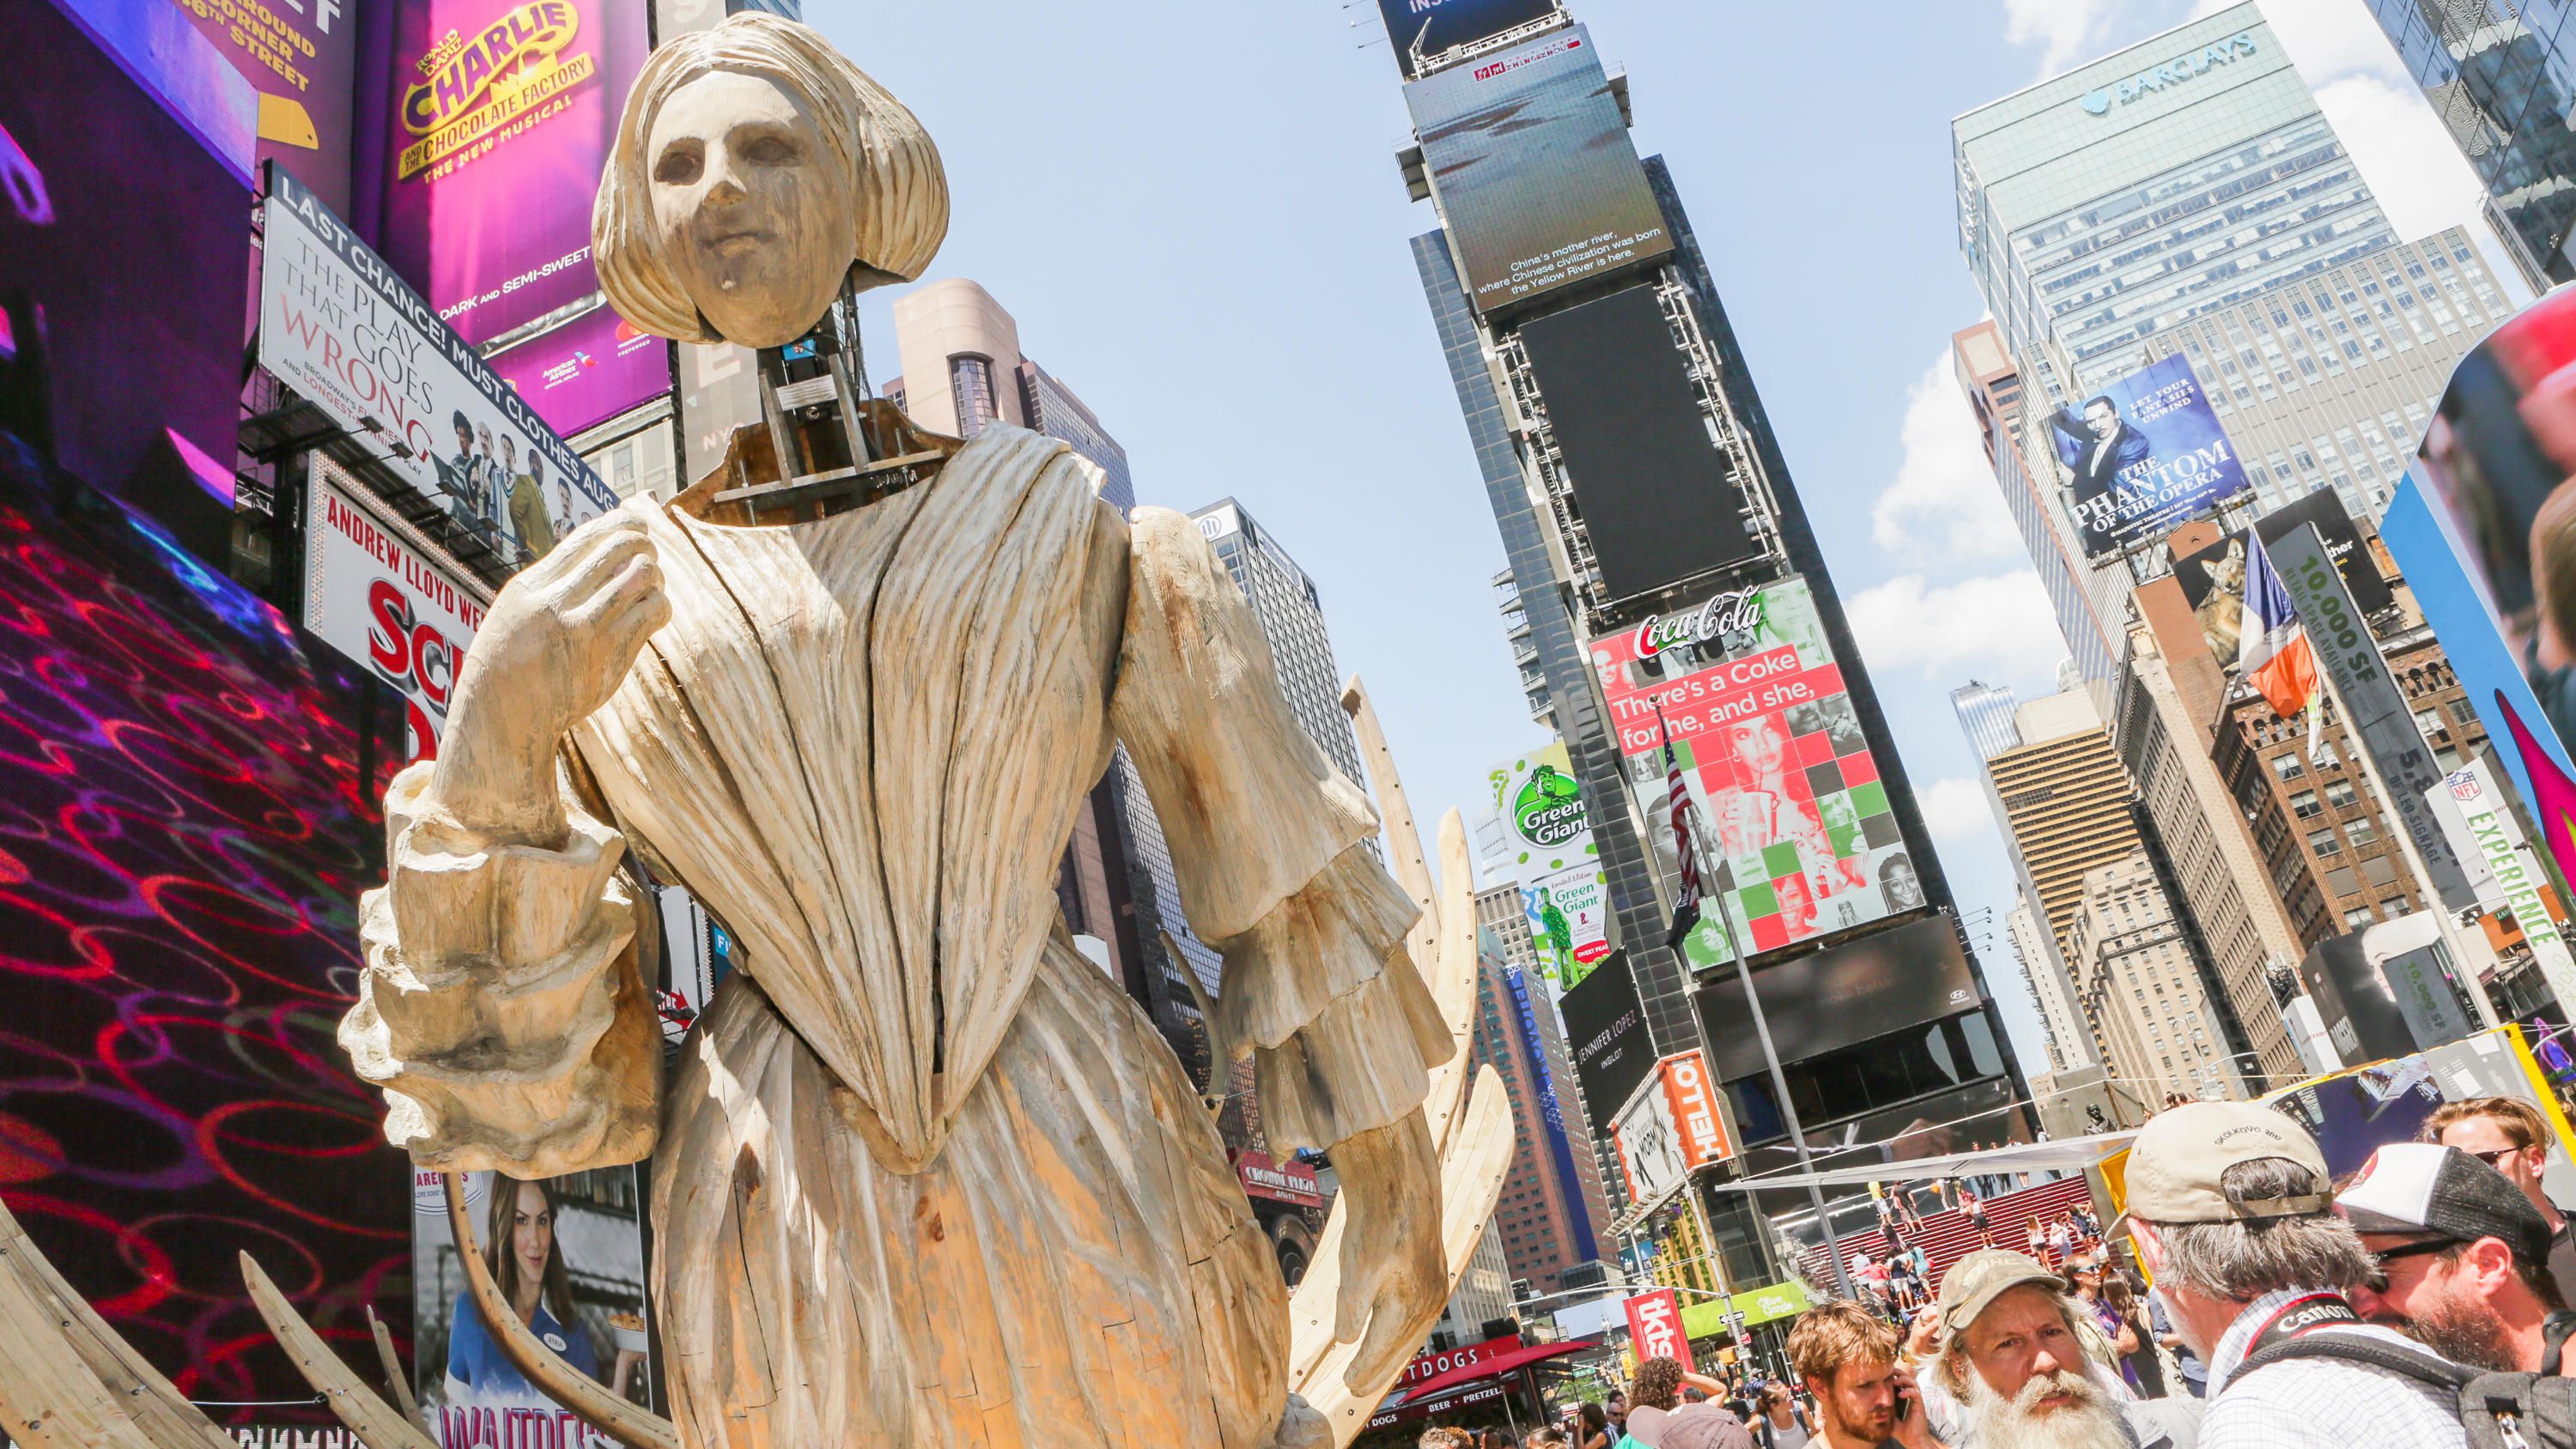 Hololens paneb keset Times Square'i avama järgmise põlvkonna kunstinäituse